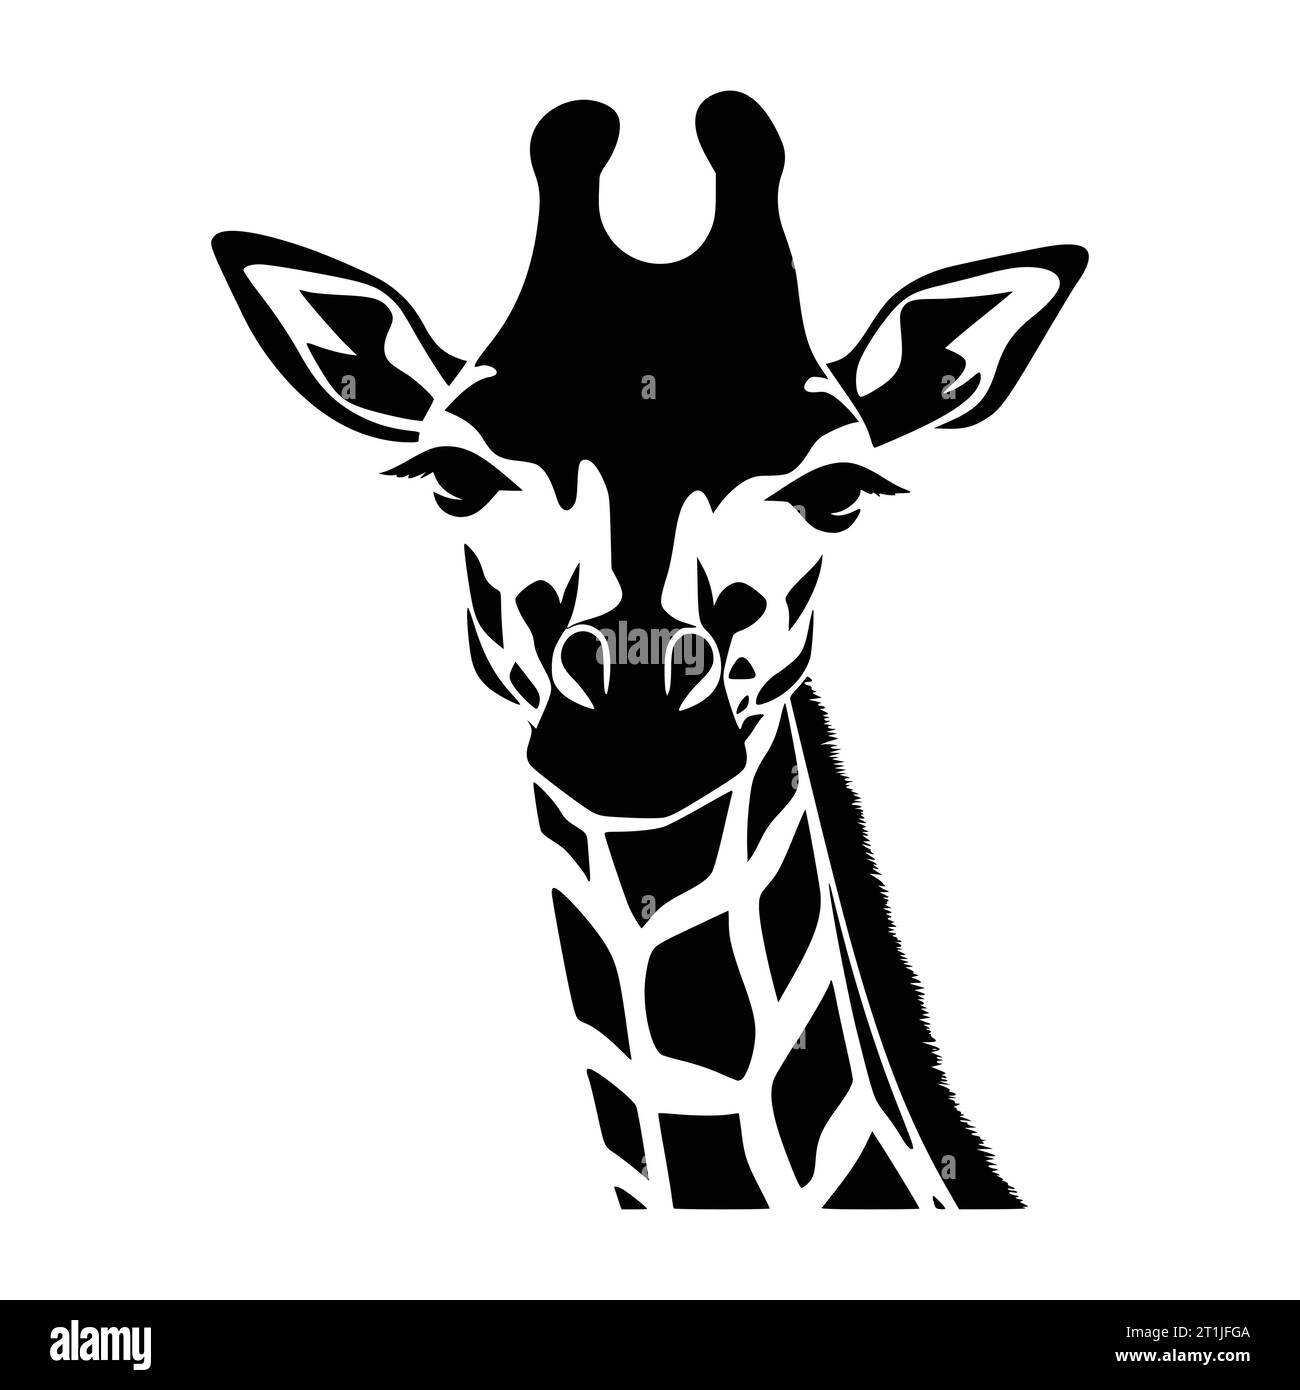 giraffe mammal wild animal head illustration for logo or symbol Stock Vector